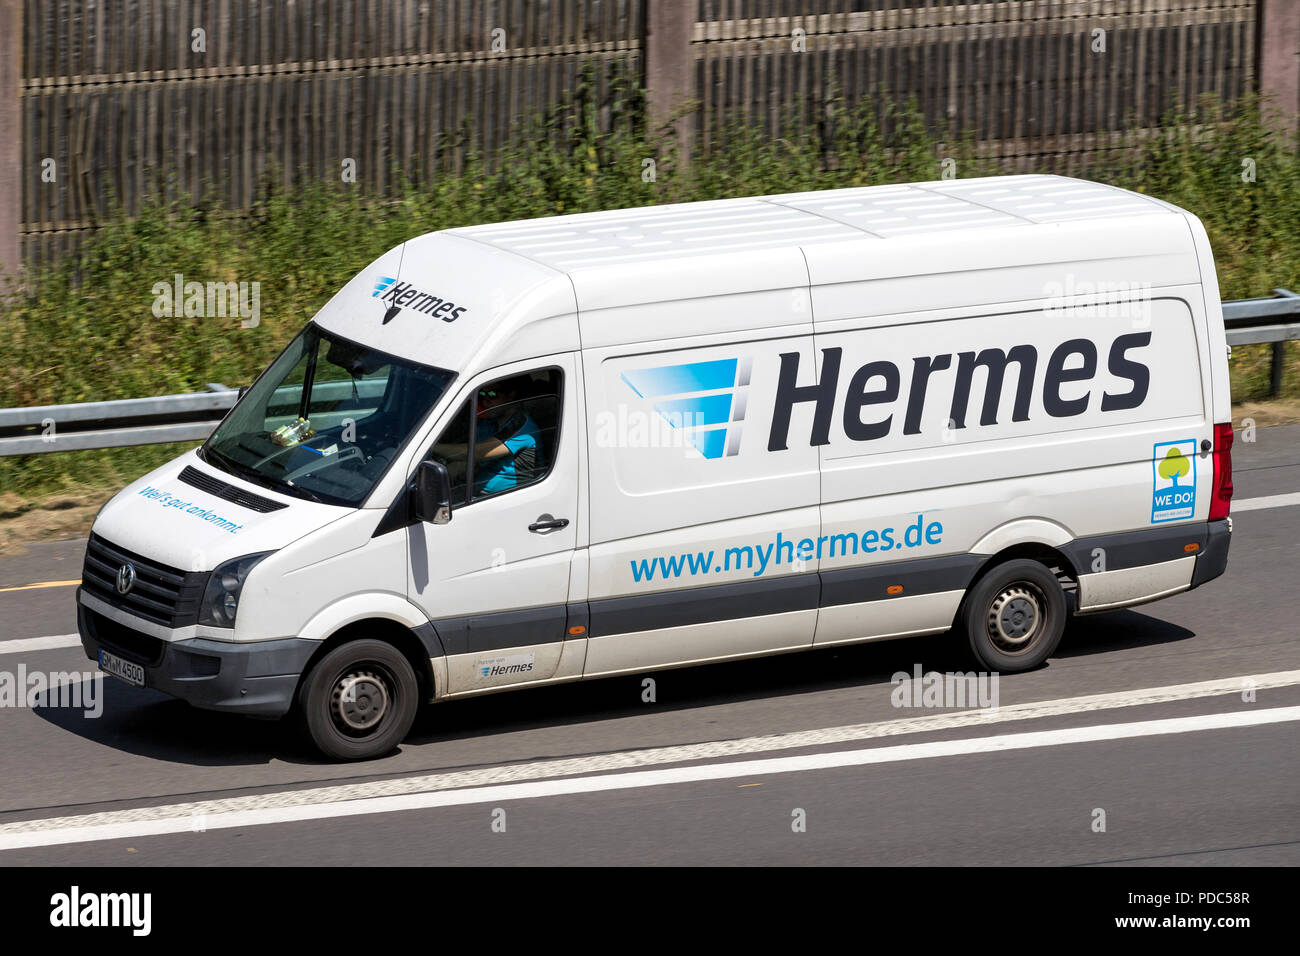 Hermes Versand van auf der Autobahn. Hermes ist der grösste Deutsche Post -  unabhängige Anbieter von Lieferungen an private Kunden Stockfotografie -  Alamy